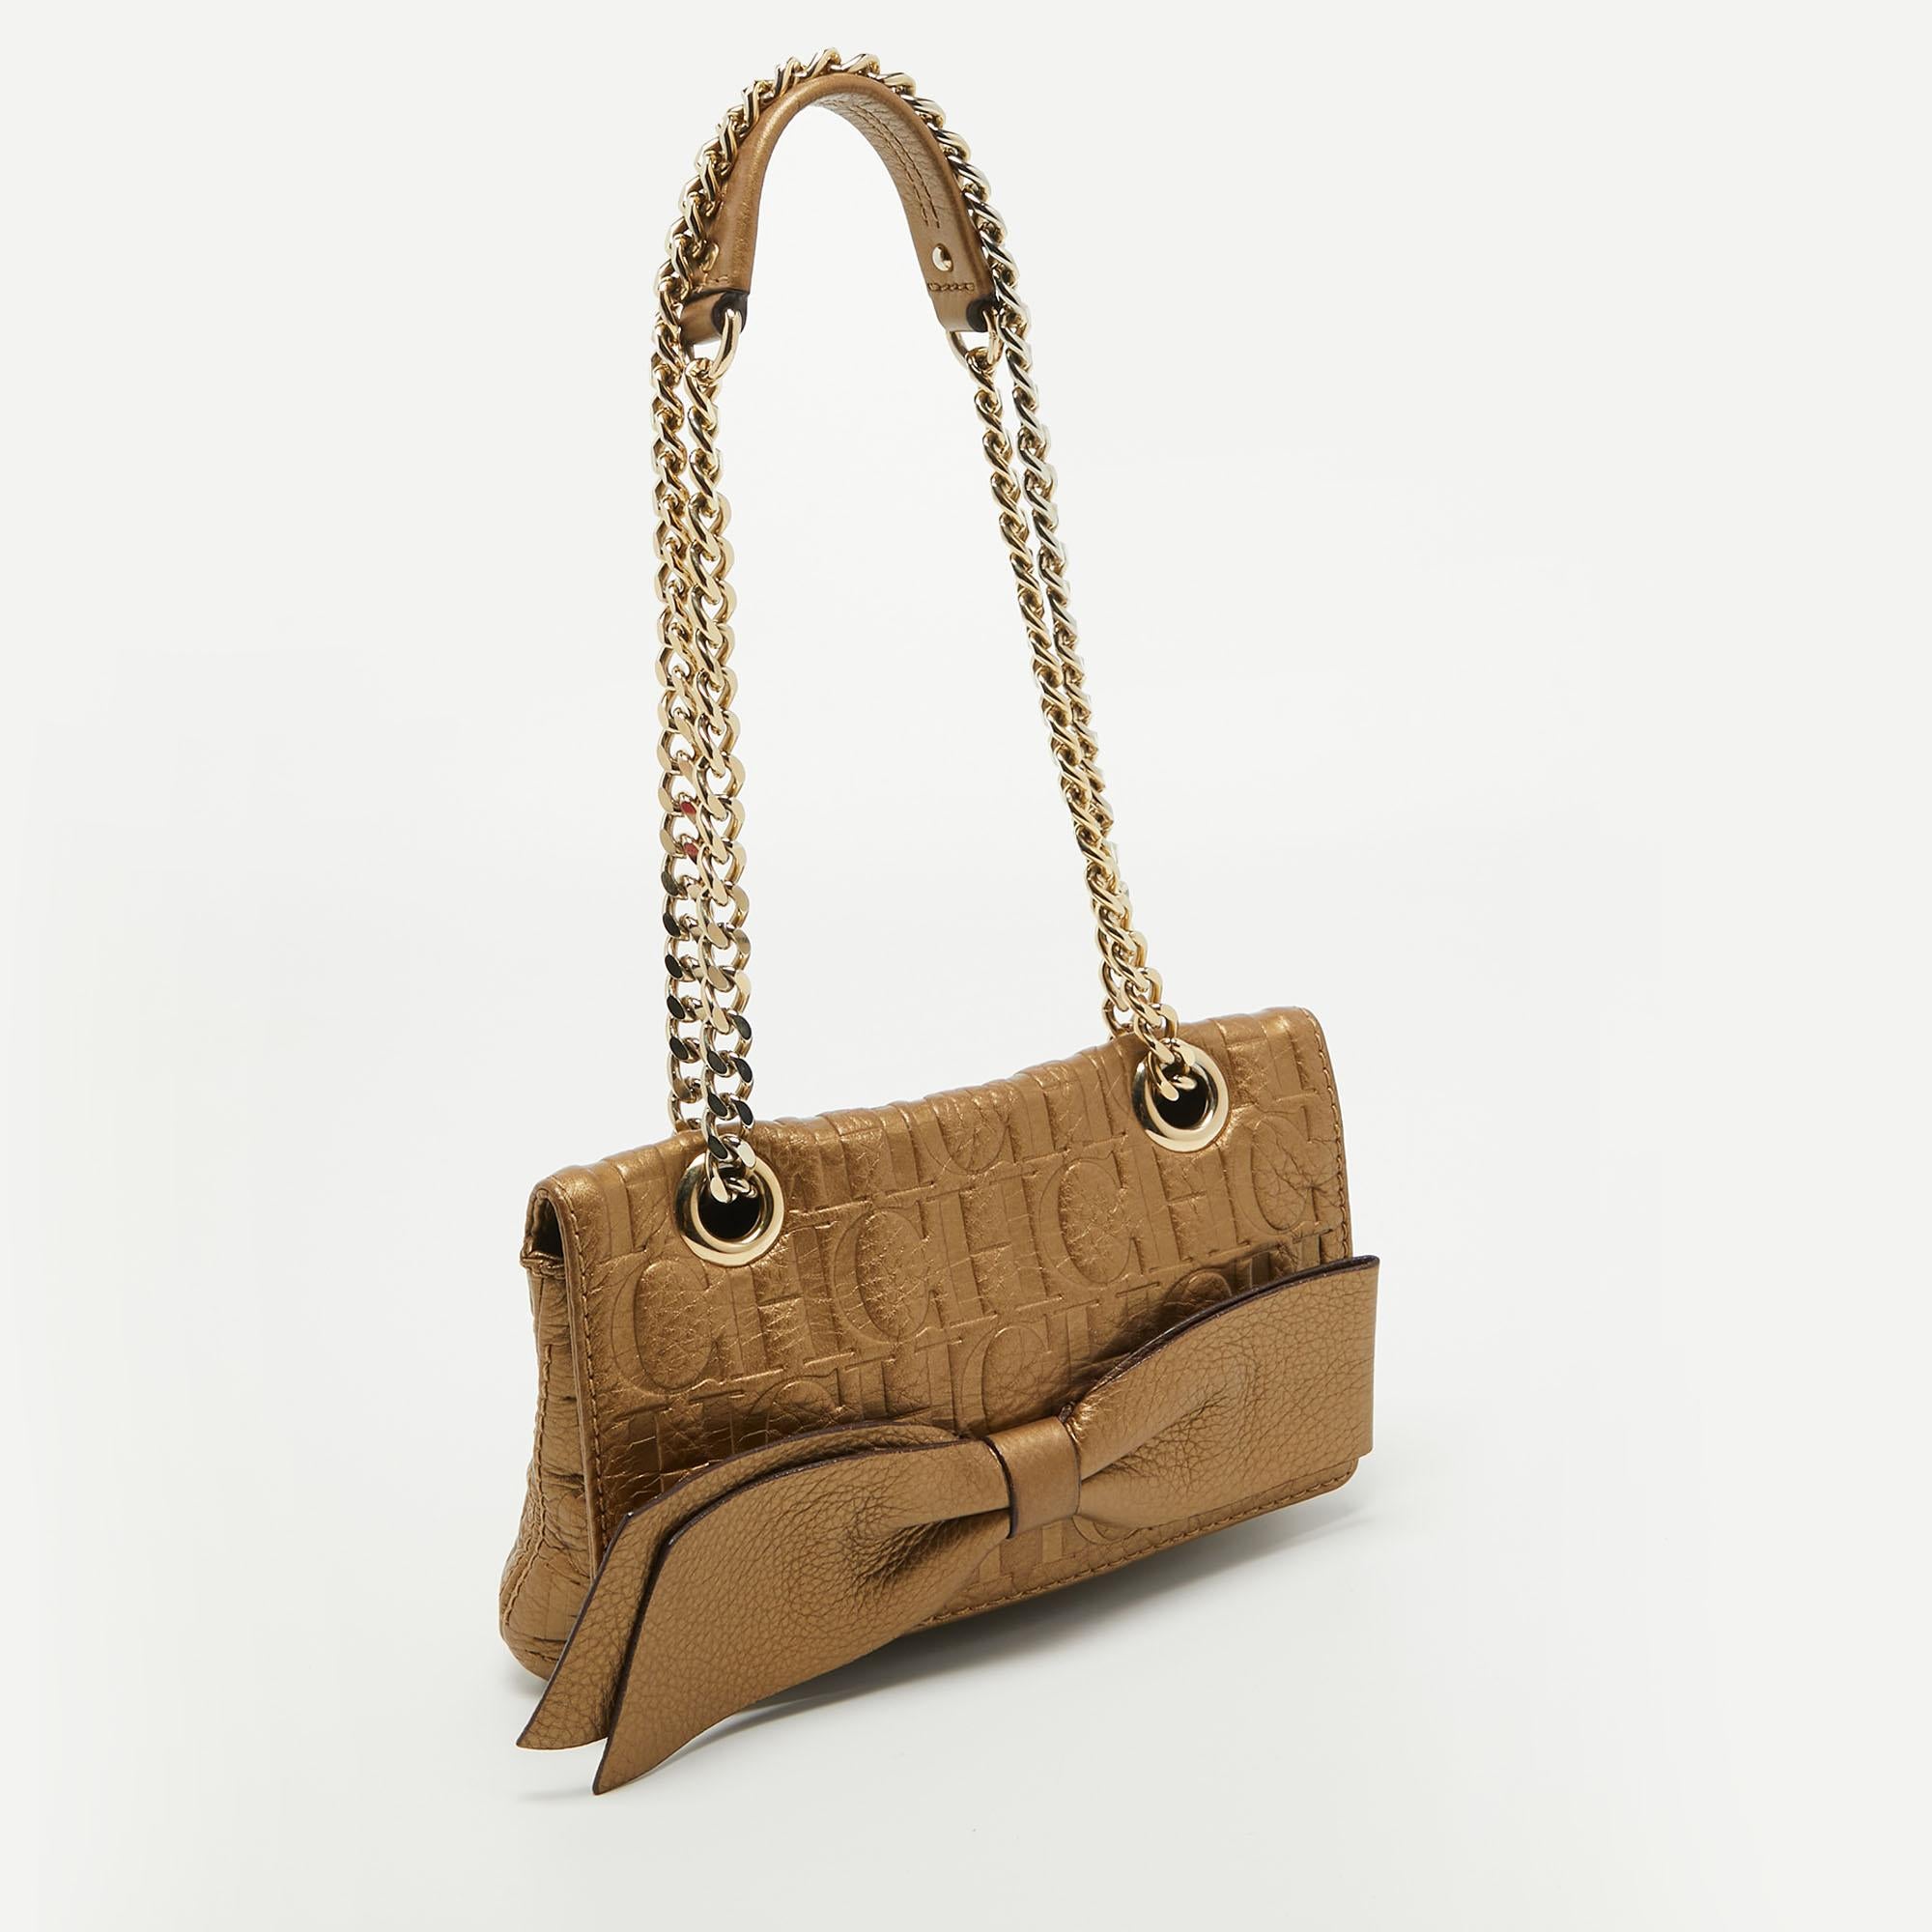 Erhöhen Sie Ihren Stil mit dieser CH Carolina Herrera Tasche. Dieses exquisite Accessoire, das Form und Funktion miteinander verbindet, ist der Inbegriff von Raffinesse und sorgt dafür, dass Sie mit Eleganz und Zweckmäßigkeit an Ihrer Seite